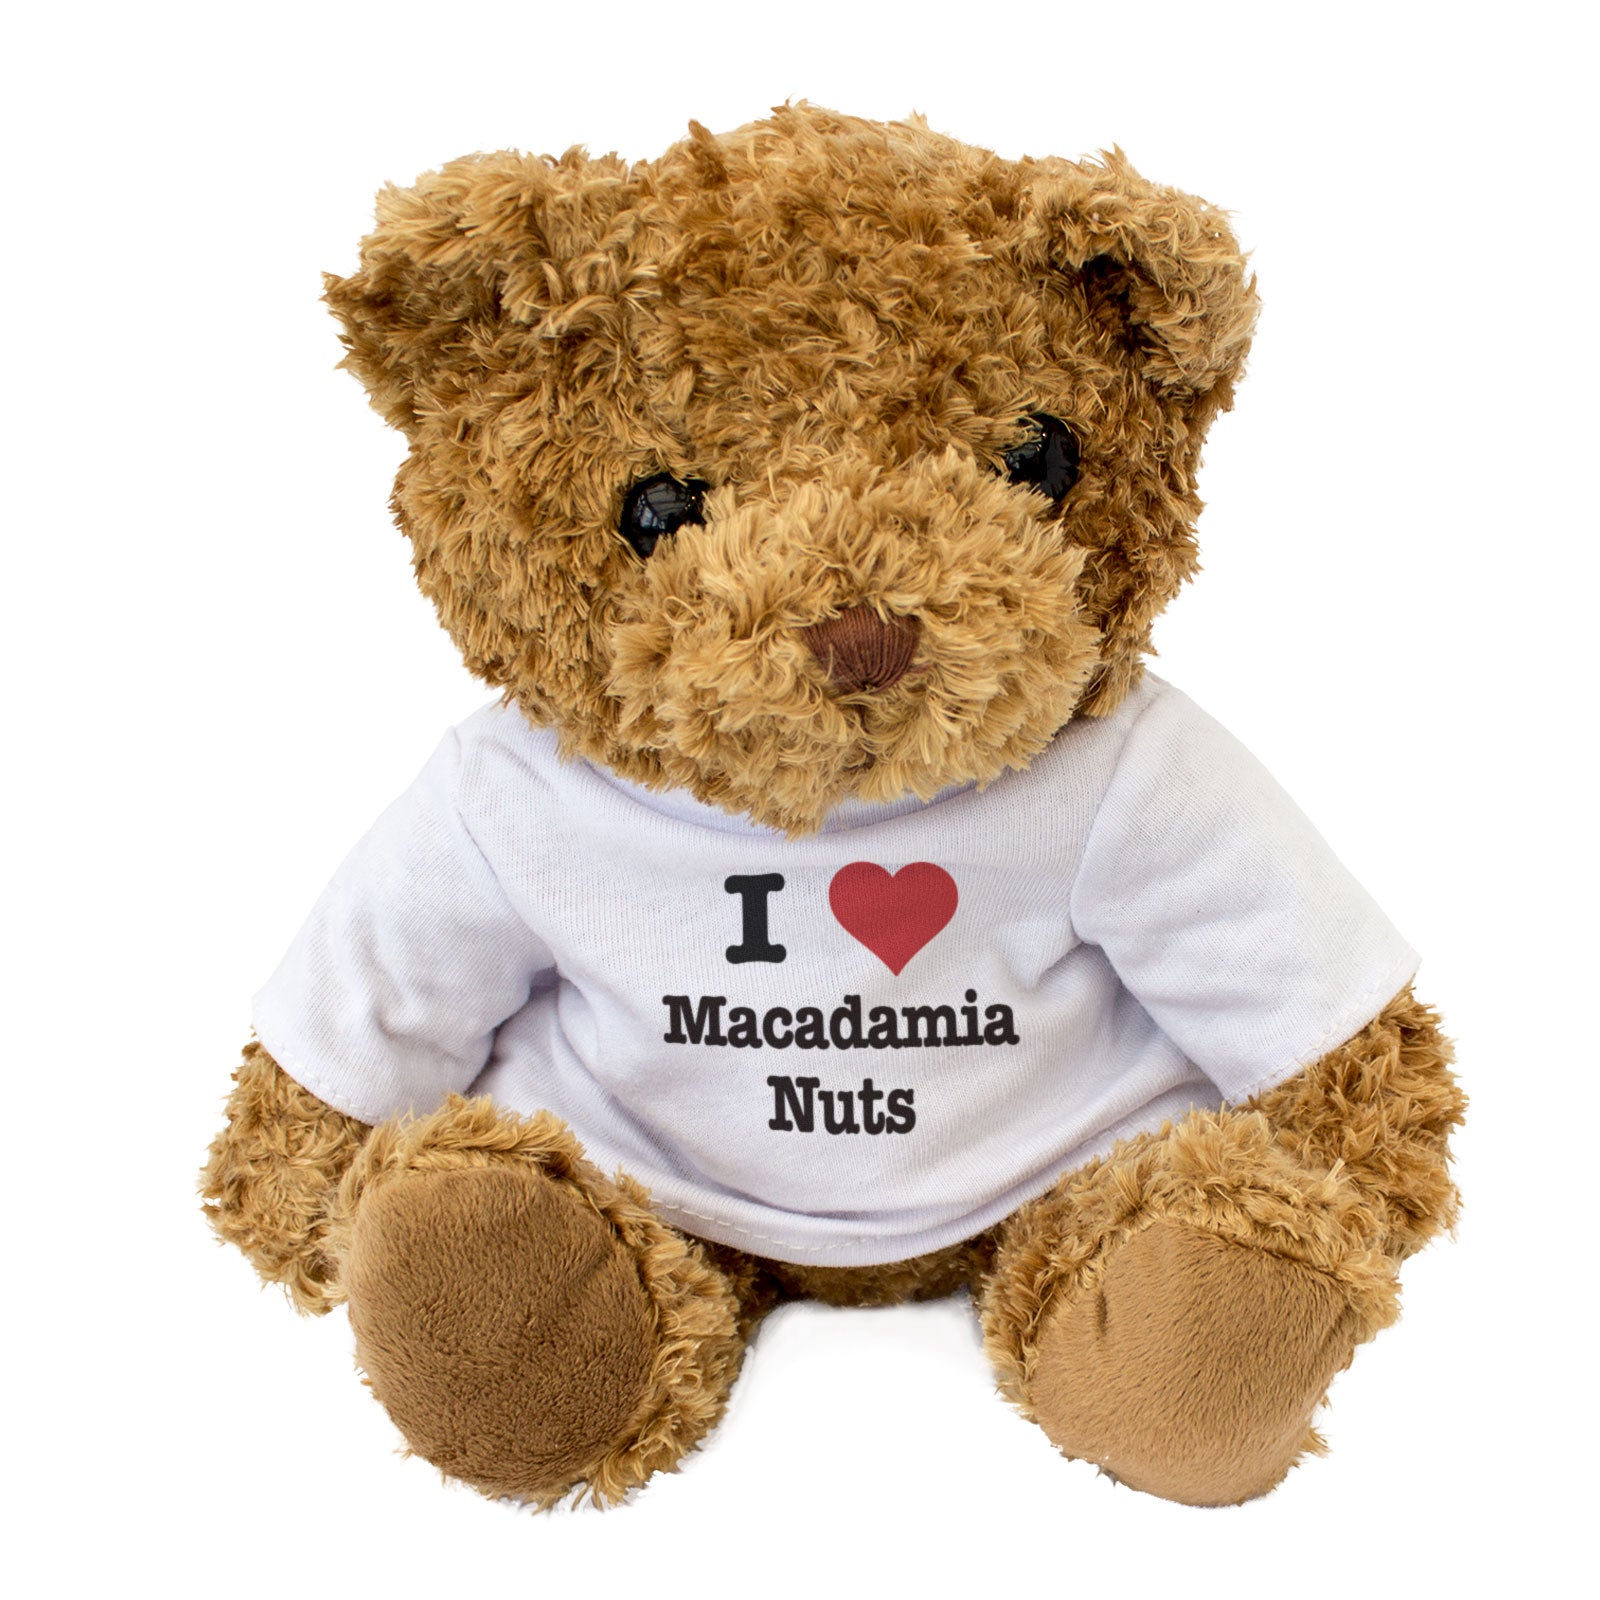 I Love Macadamia Nuts - Teddy Bear